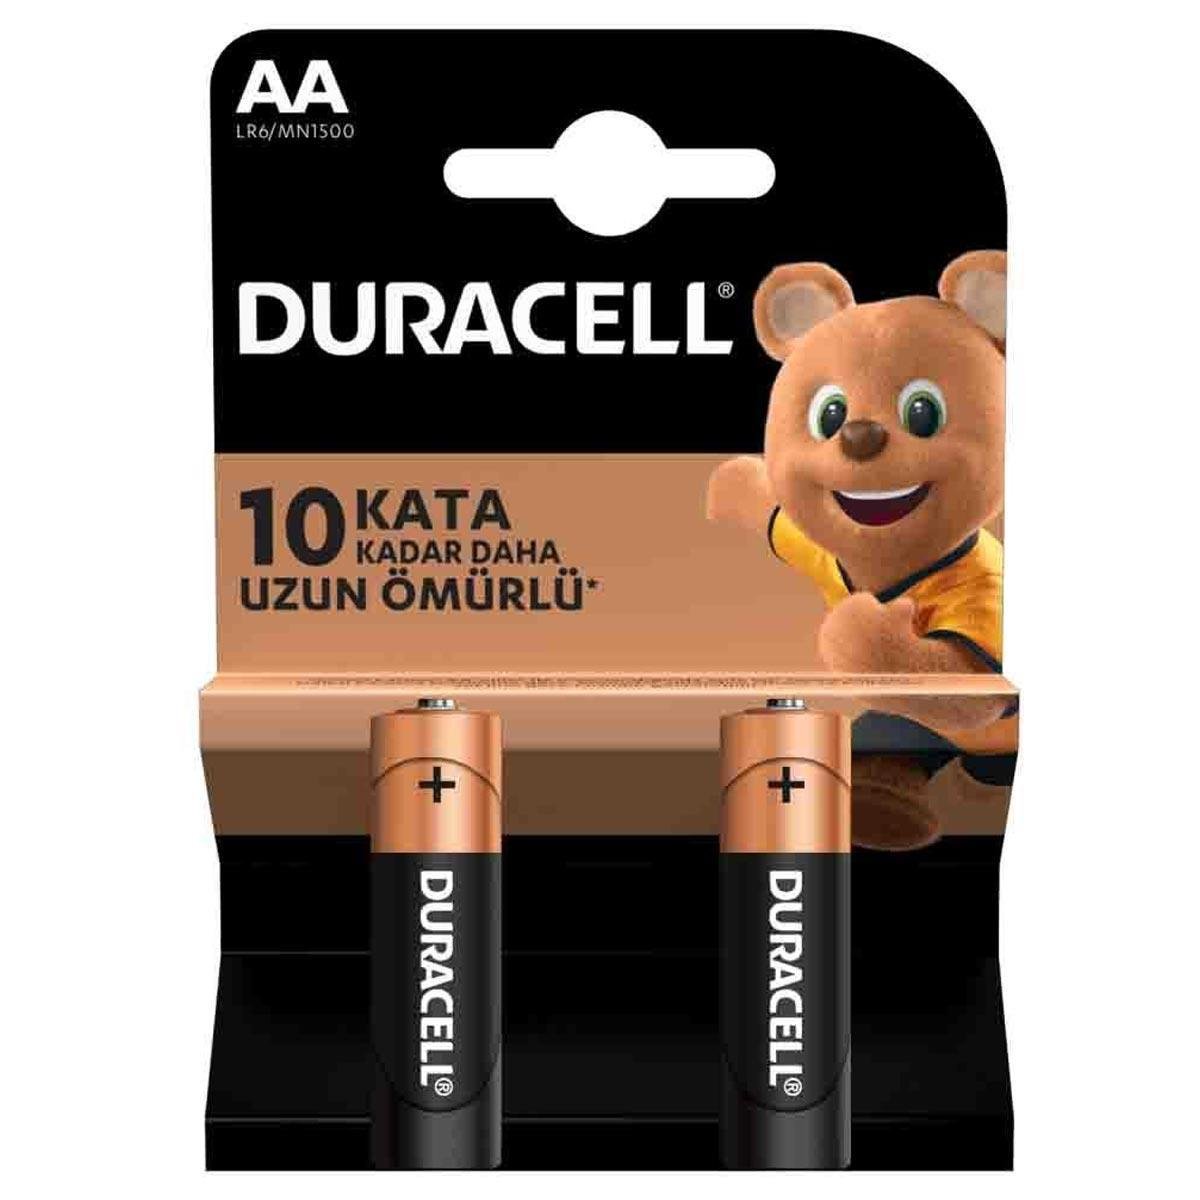 duracell-aa-lr6mn1500-alkalin-kalem-pil-2039li-blister-48190